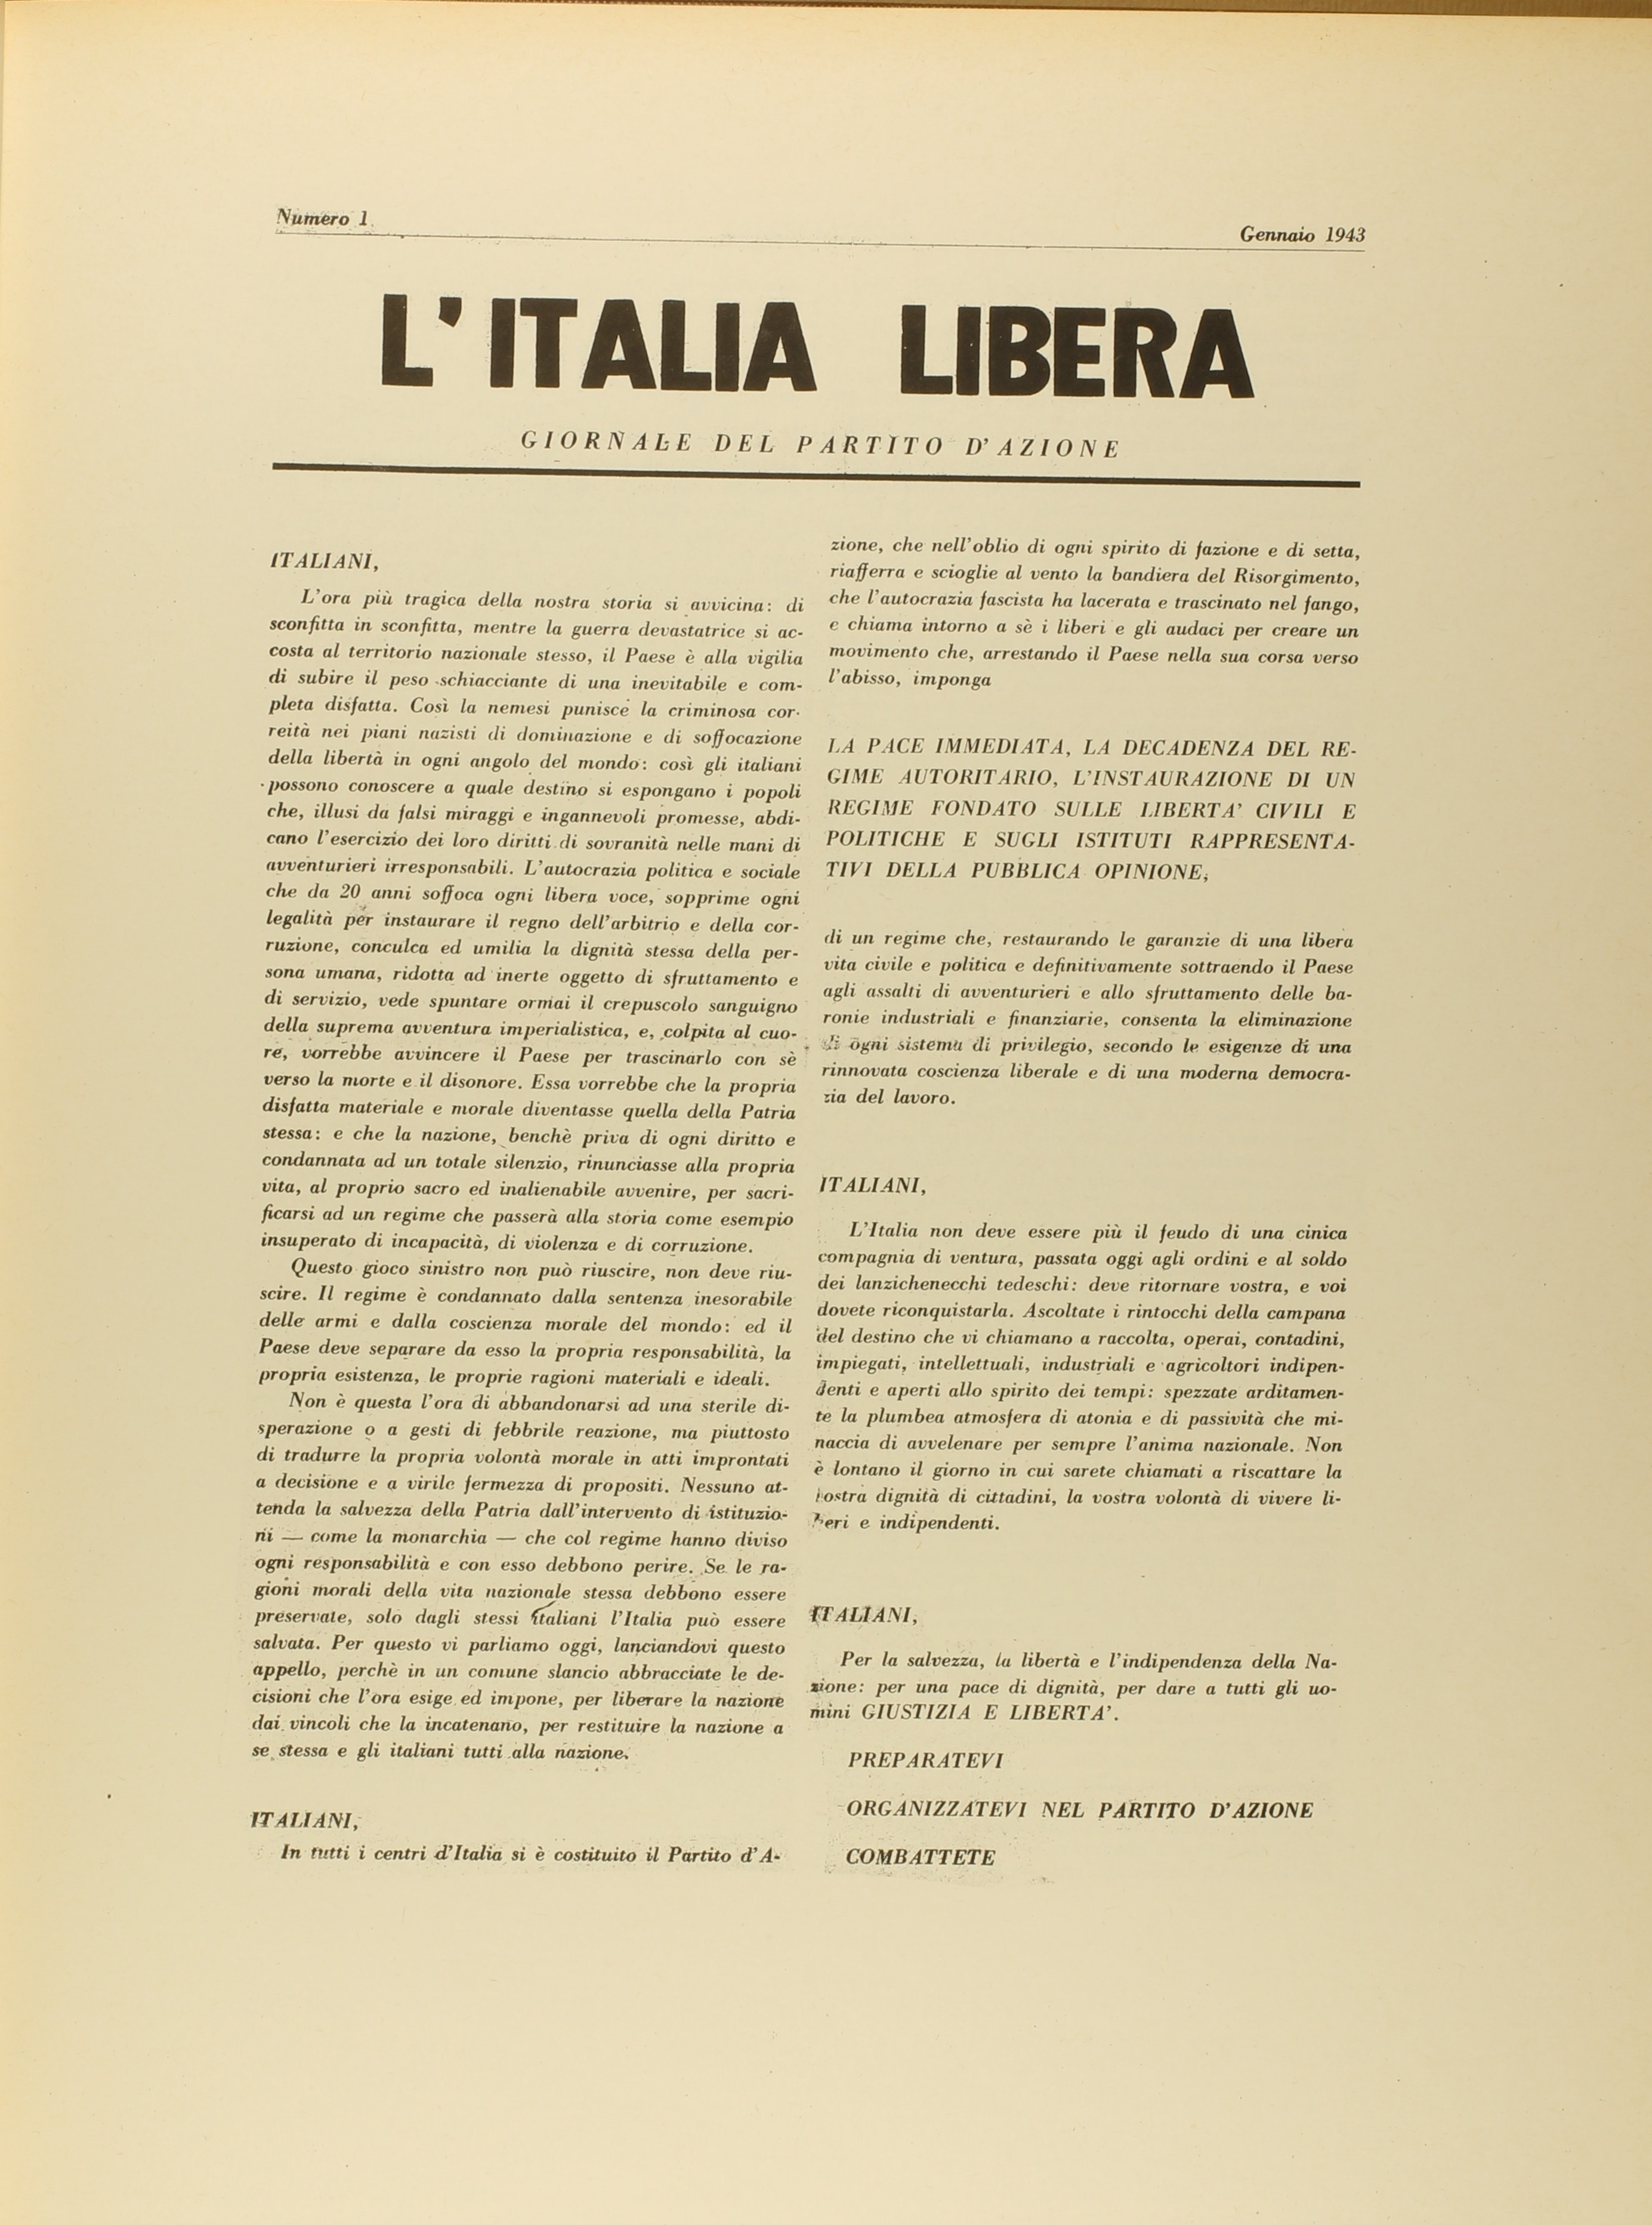 "L'Italia libera", Giornale del Partito d'Azione, n. 1, gennaio 1943